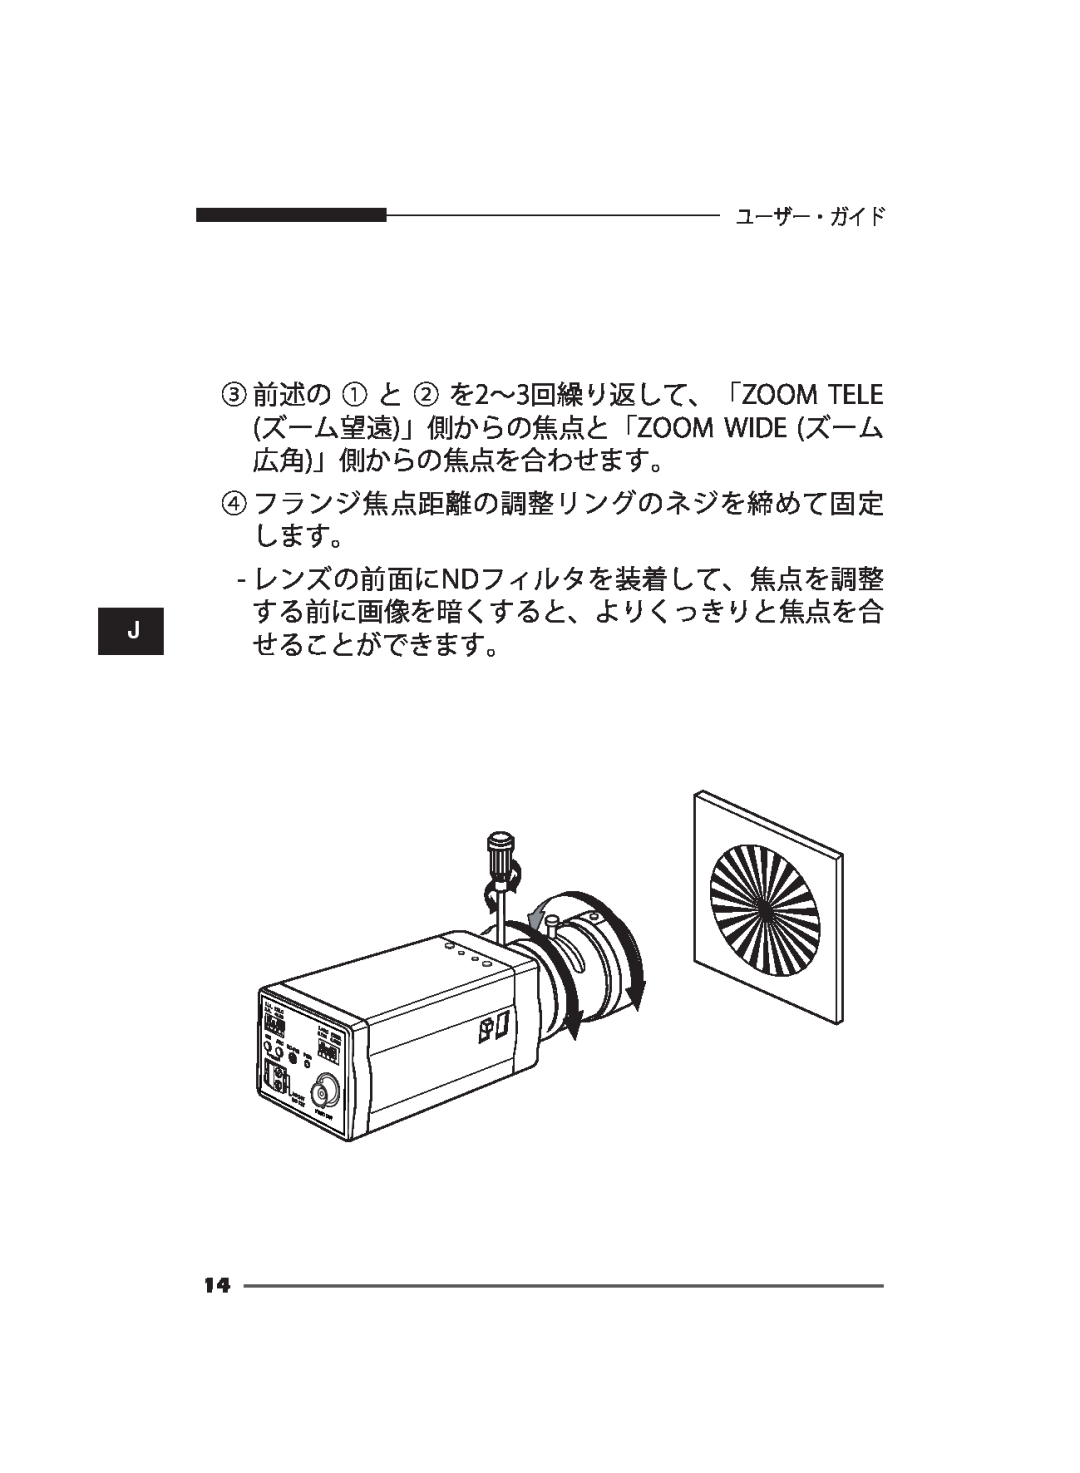 Samsung SCC-B2311P/TRK manual ④ フランジ焦点距離の調整リングのネジを締めて固定 します。 レンズの前面にNDフィルタを装着して、焦点を調整, する前に画像を暗くすると、よりくっきりと焦点を合 せることができます。 